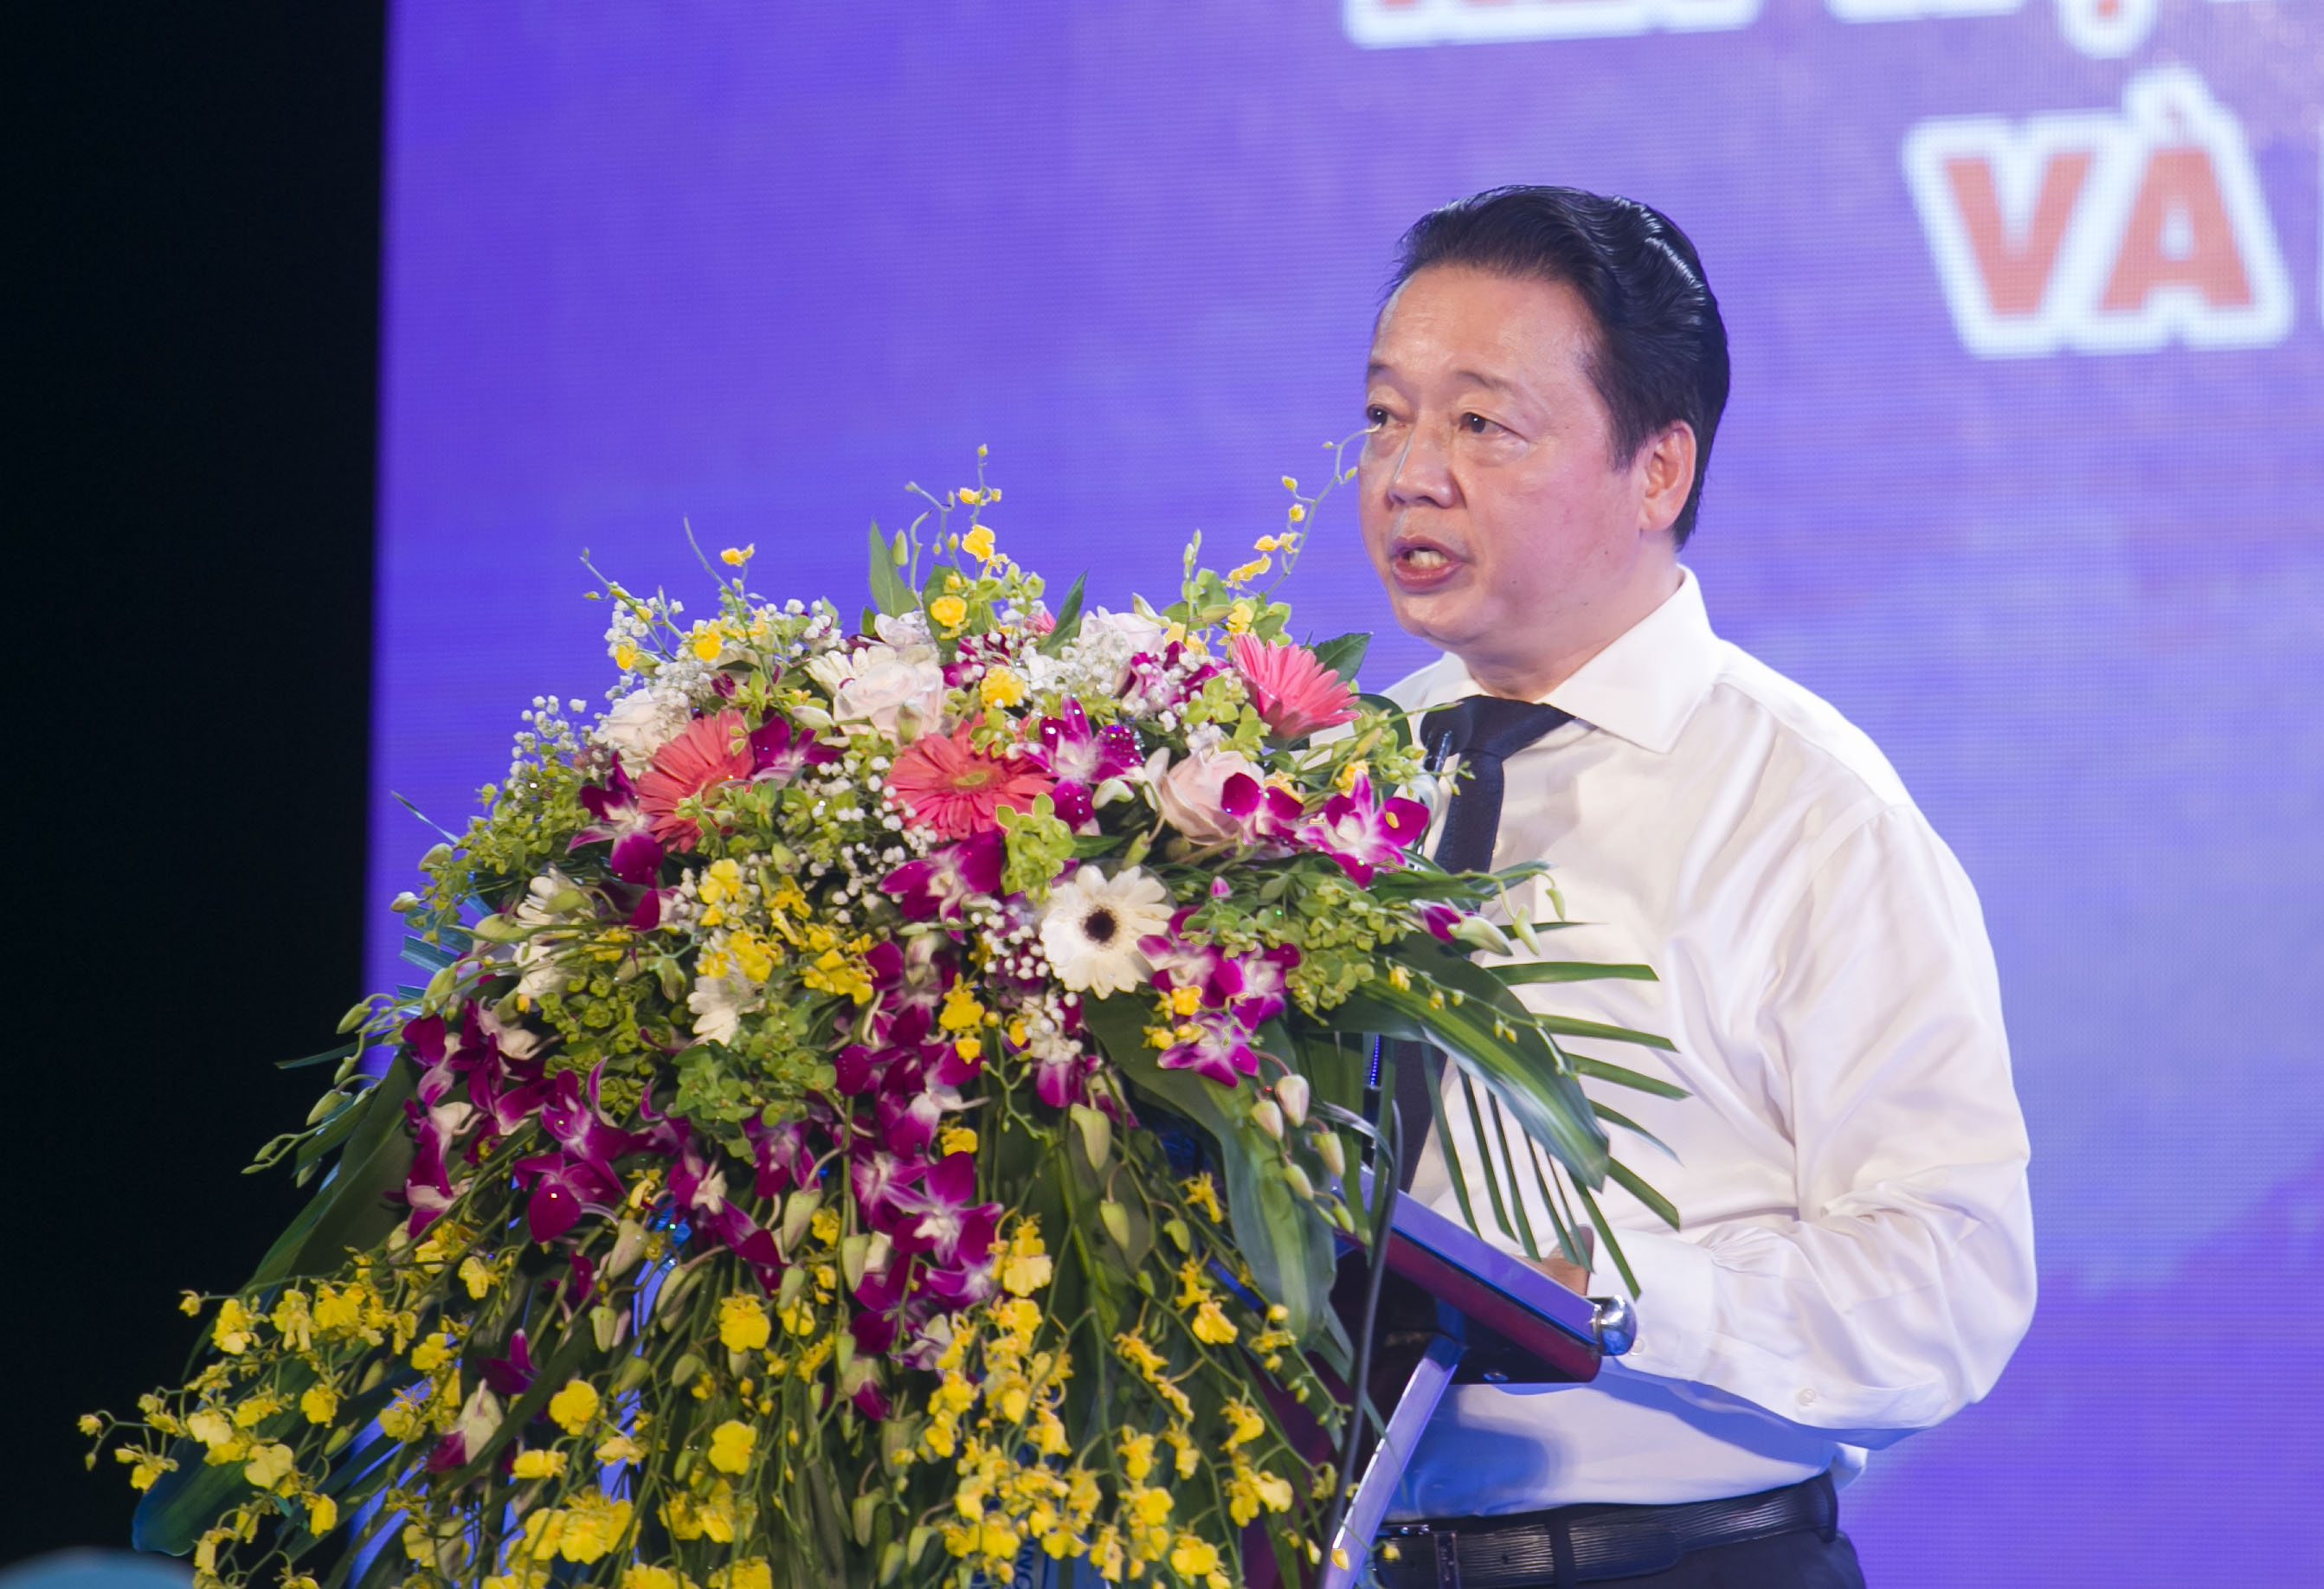 Đồng chí Trần Hồng Hà, Ủy viên Trung ương Đảng, Bộ trưởng Bộ TN&MT kêu gọi nhân dân cùng quyết tâm, chung sức, đồng lòng trong việc giảm thiểu chất thải nhựa xuống các vùng biển